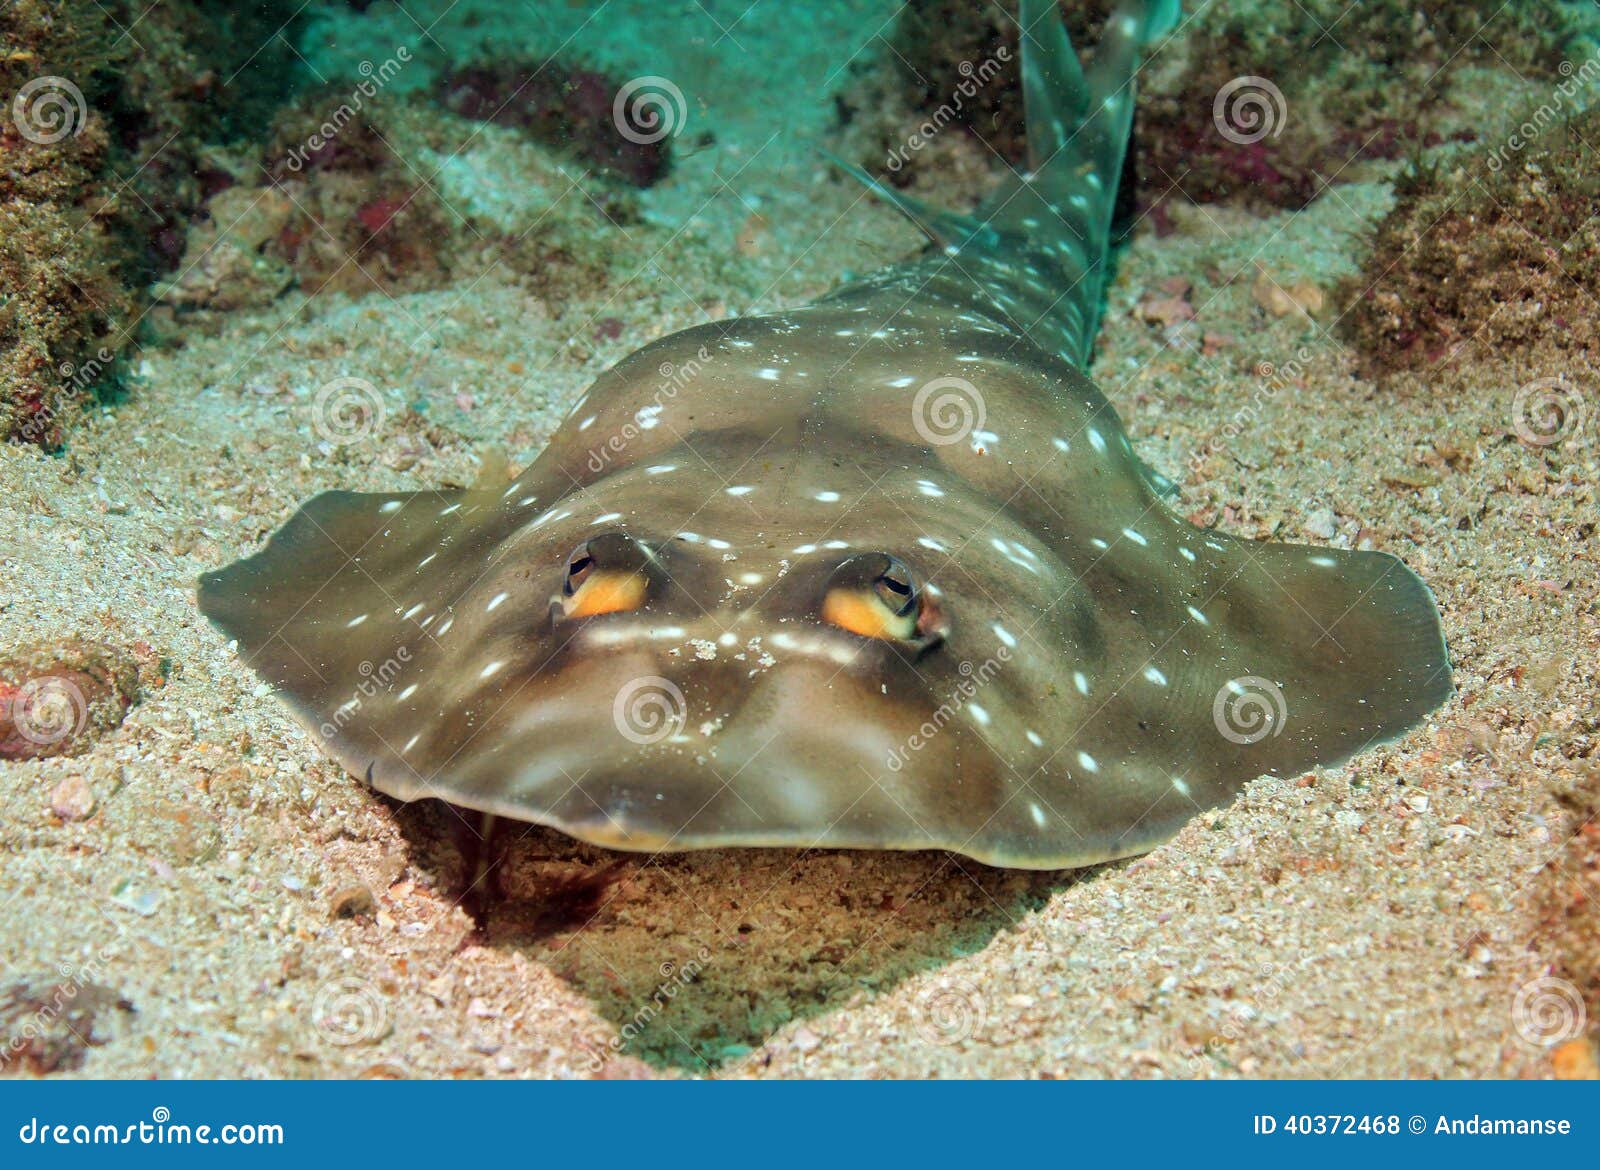 gorgona guitarfish